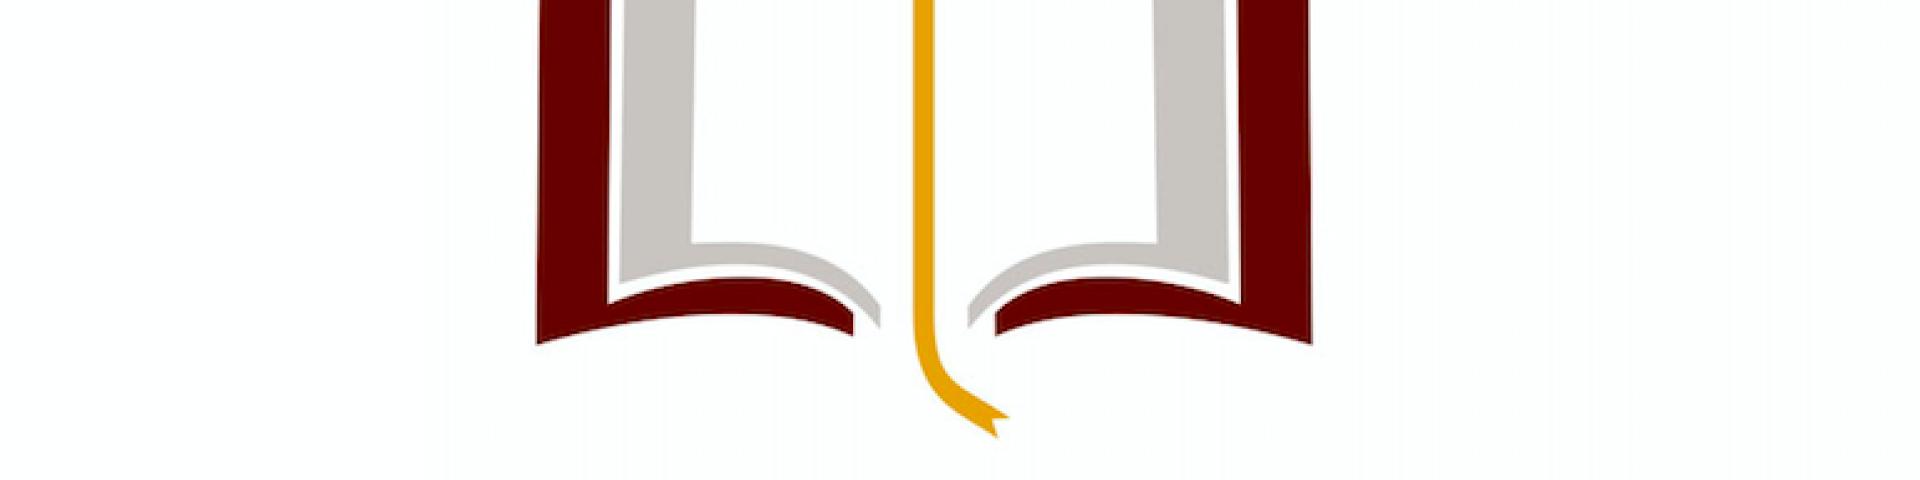 Andrew M. Greeley for Catholic Education logo